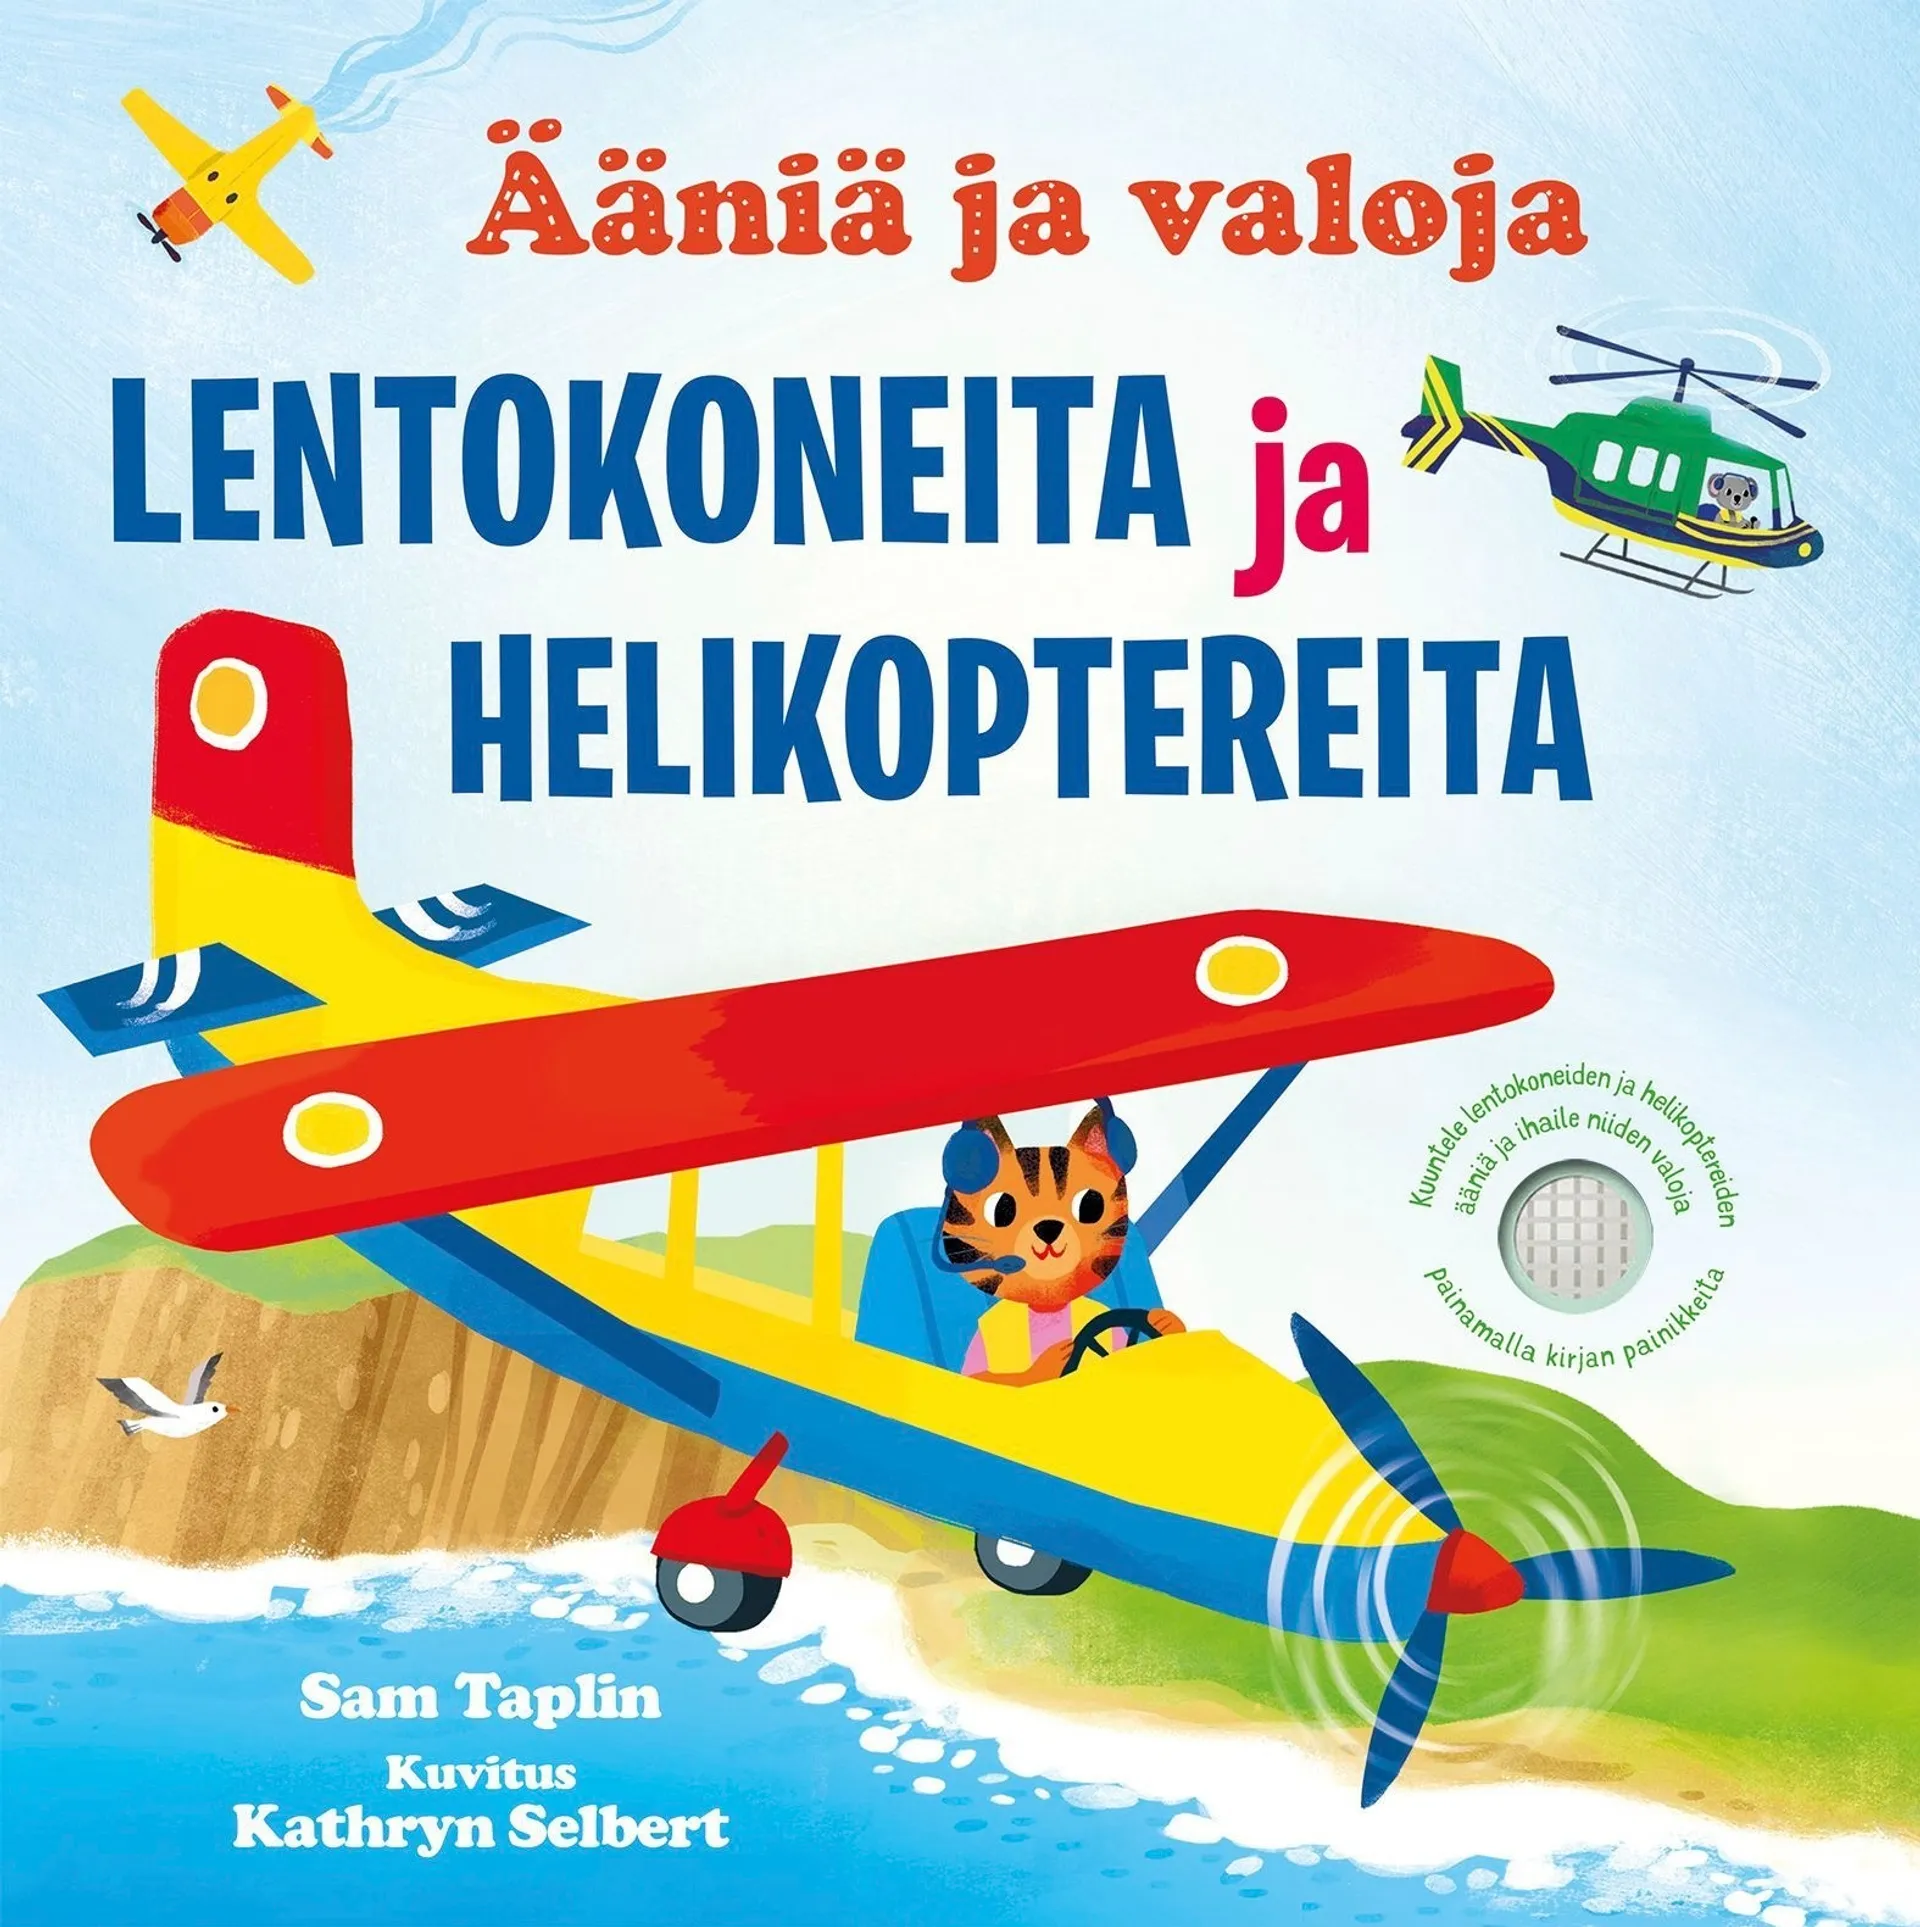 Taplin, Lentokoneita & Helikoptereita -  Ääniä ja valoja